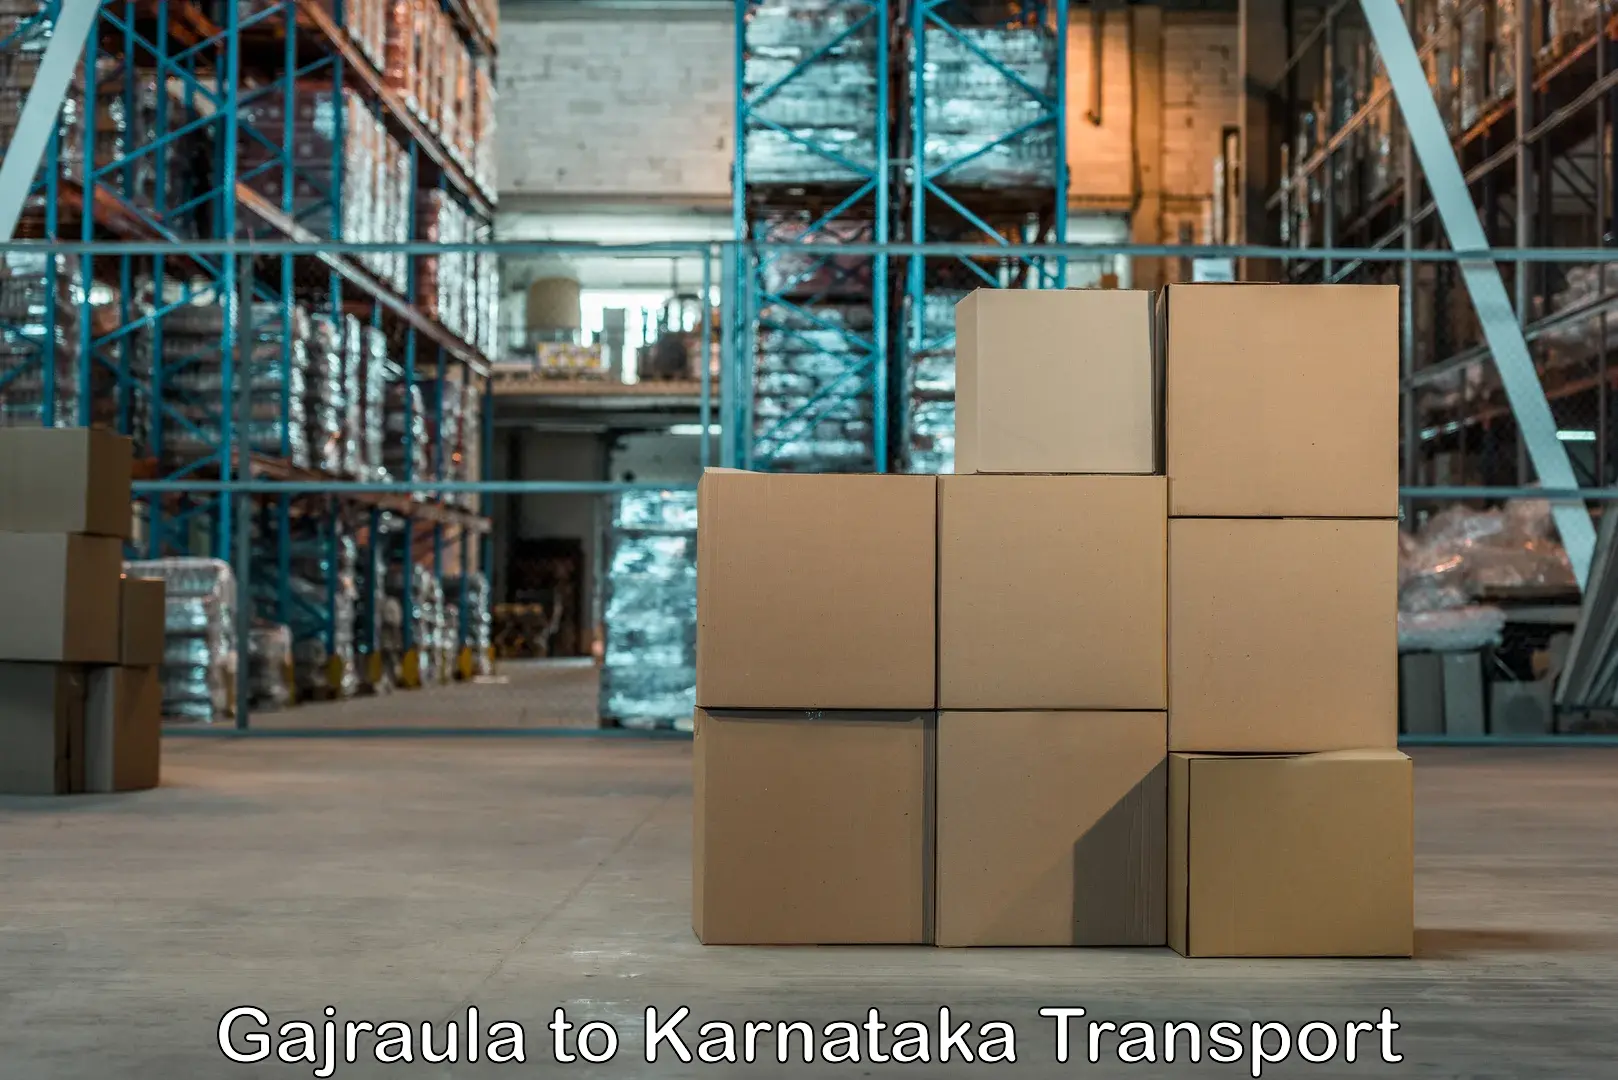 Nearby transport service Gajraula to Karnataka